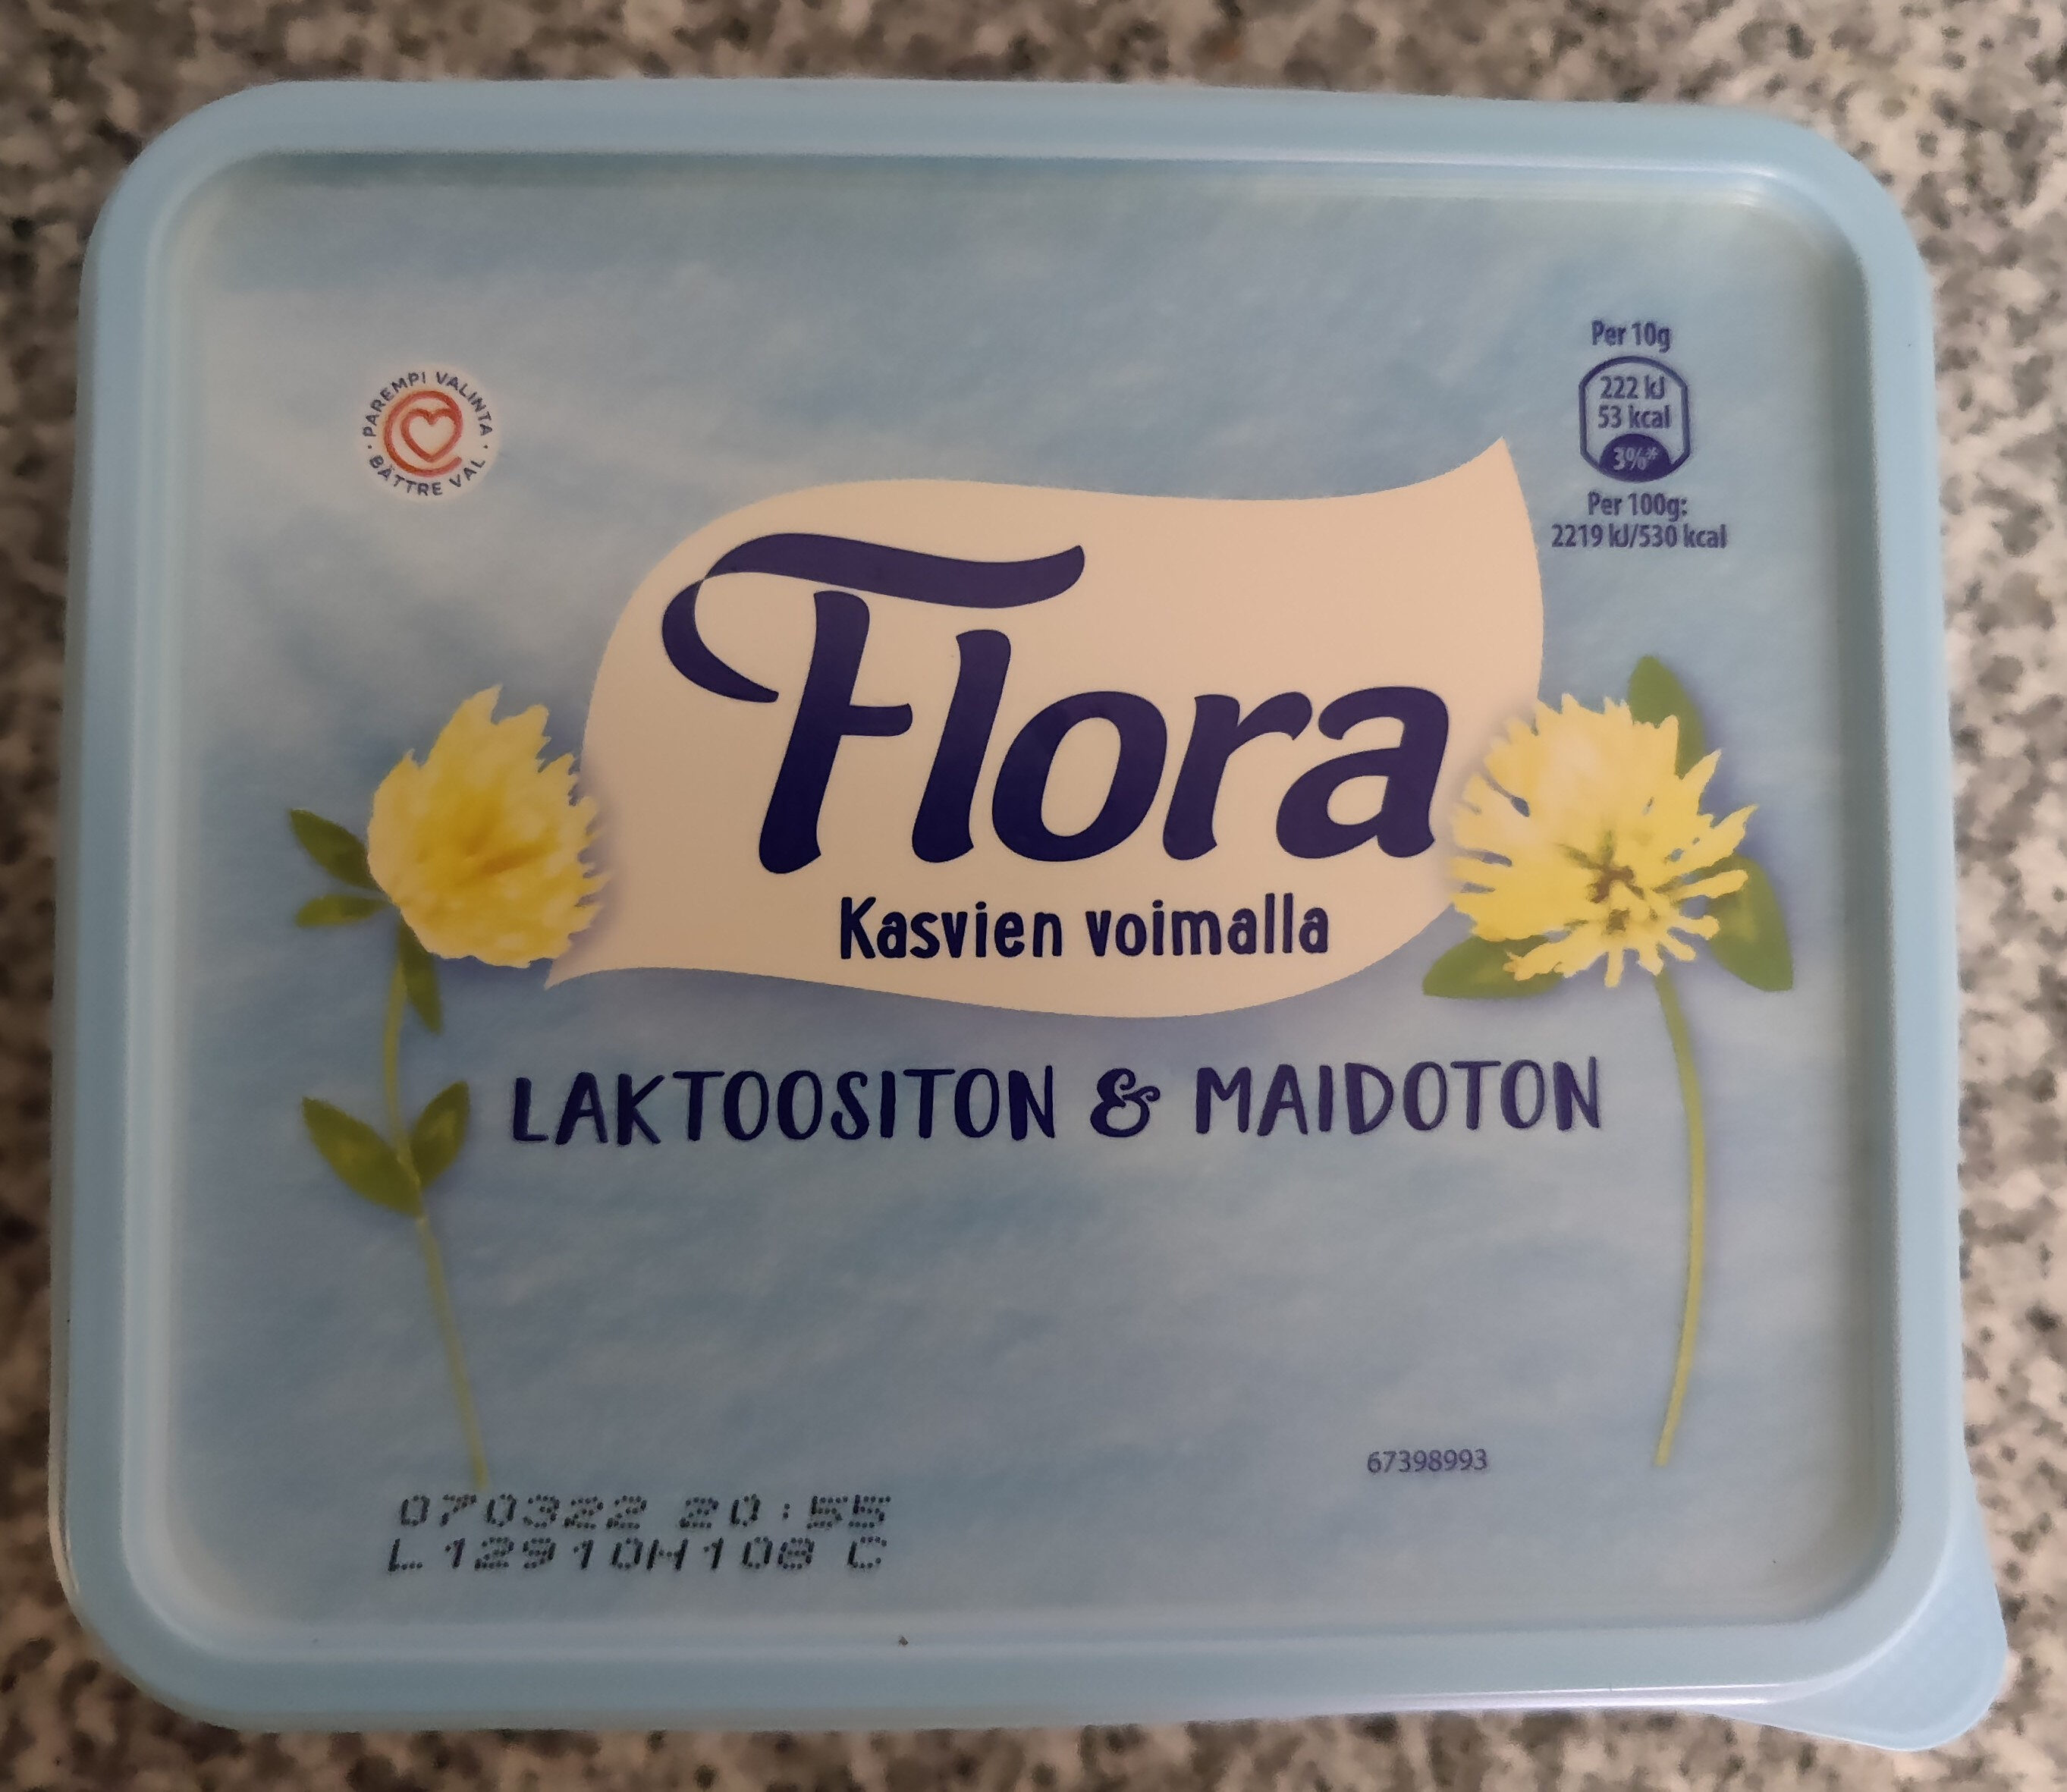 Flora laktoositon ja maidoton - Produkt - fi